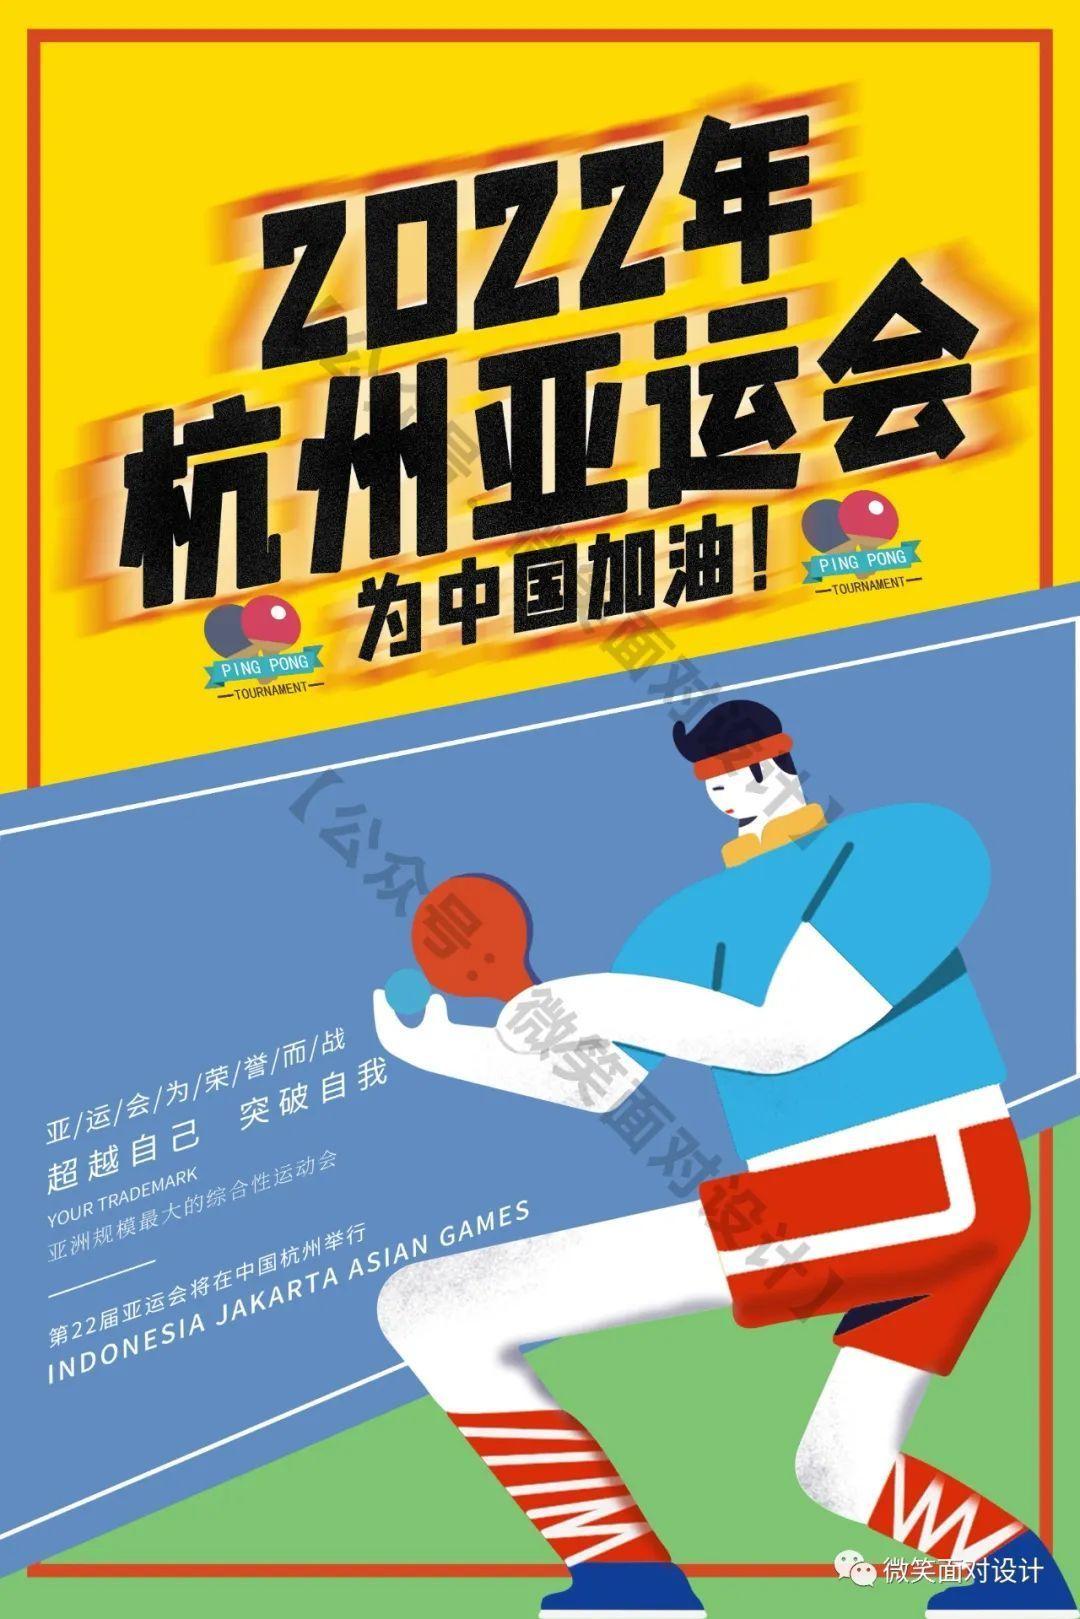 杭州亚运会标语图片